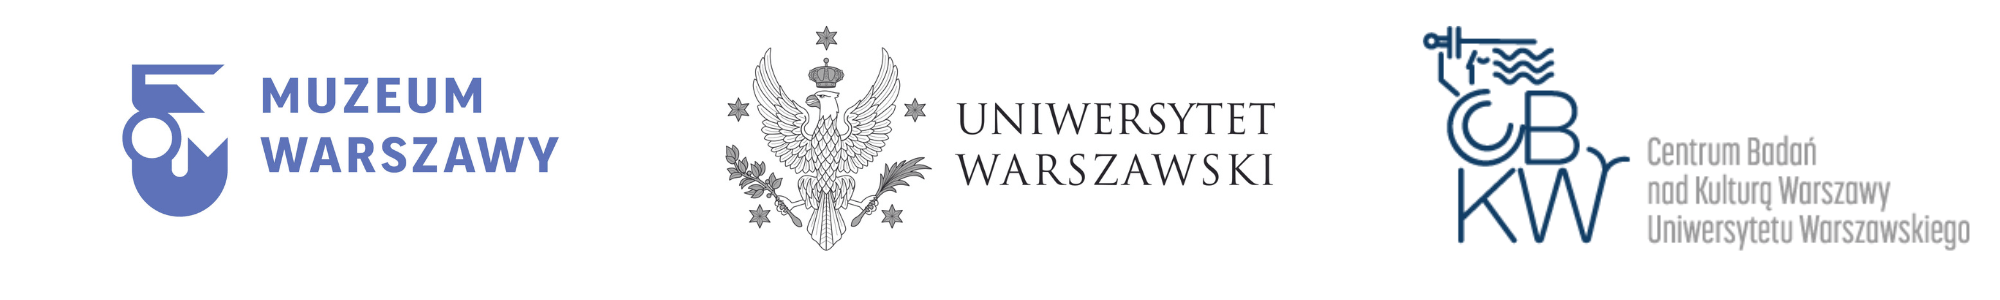 Seminarium Warszawskie logotypy